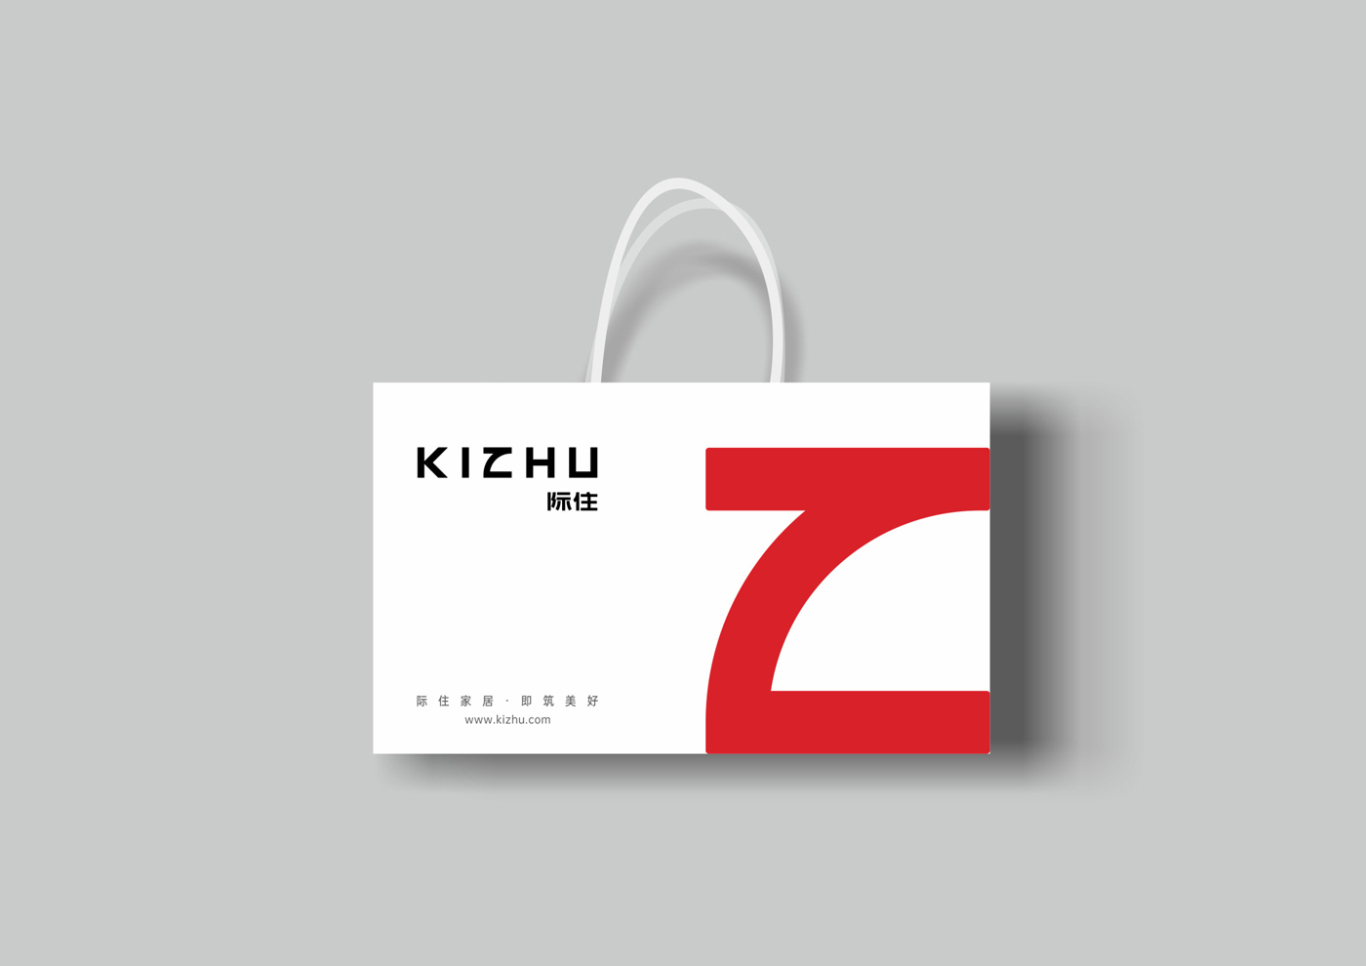 Kizhu 际住家居品牌形象设计图12